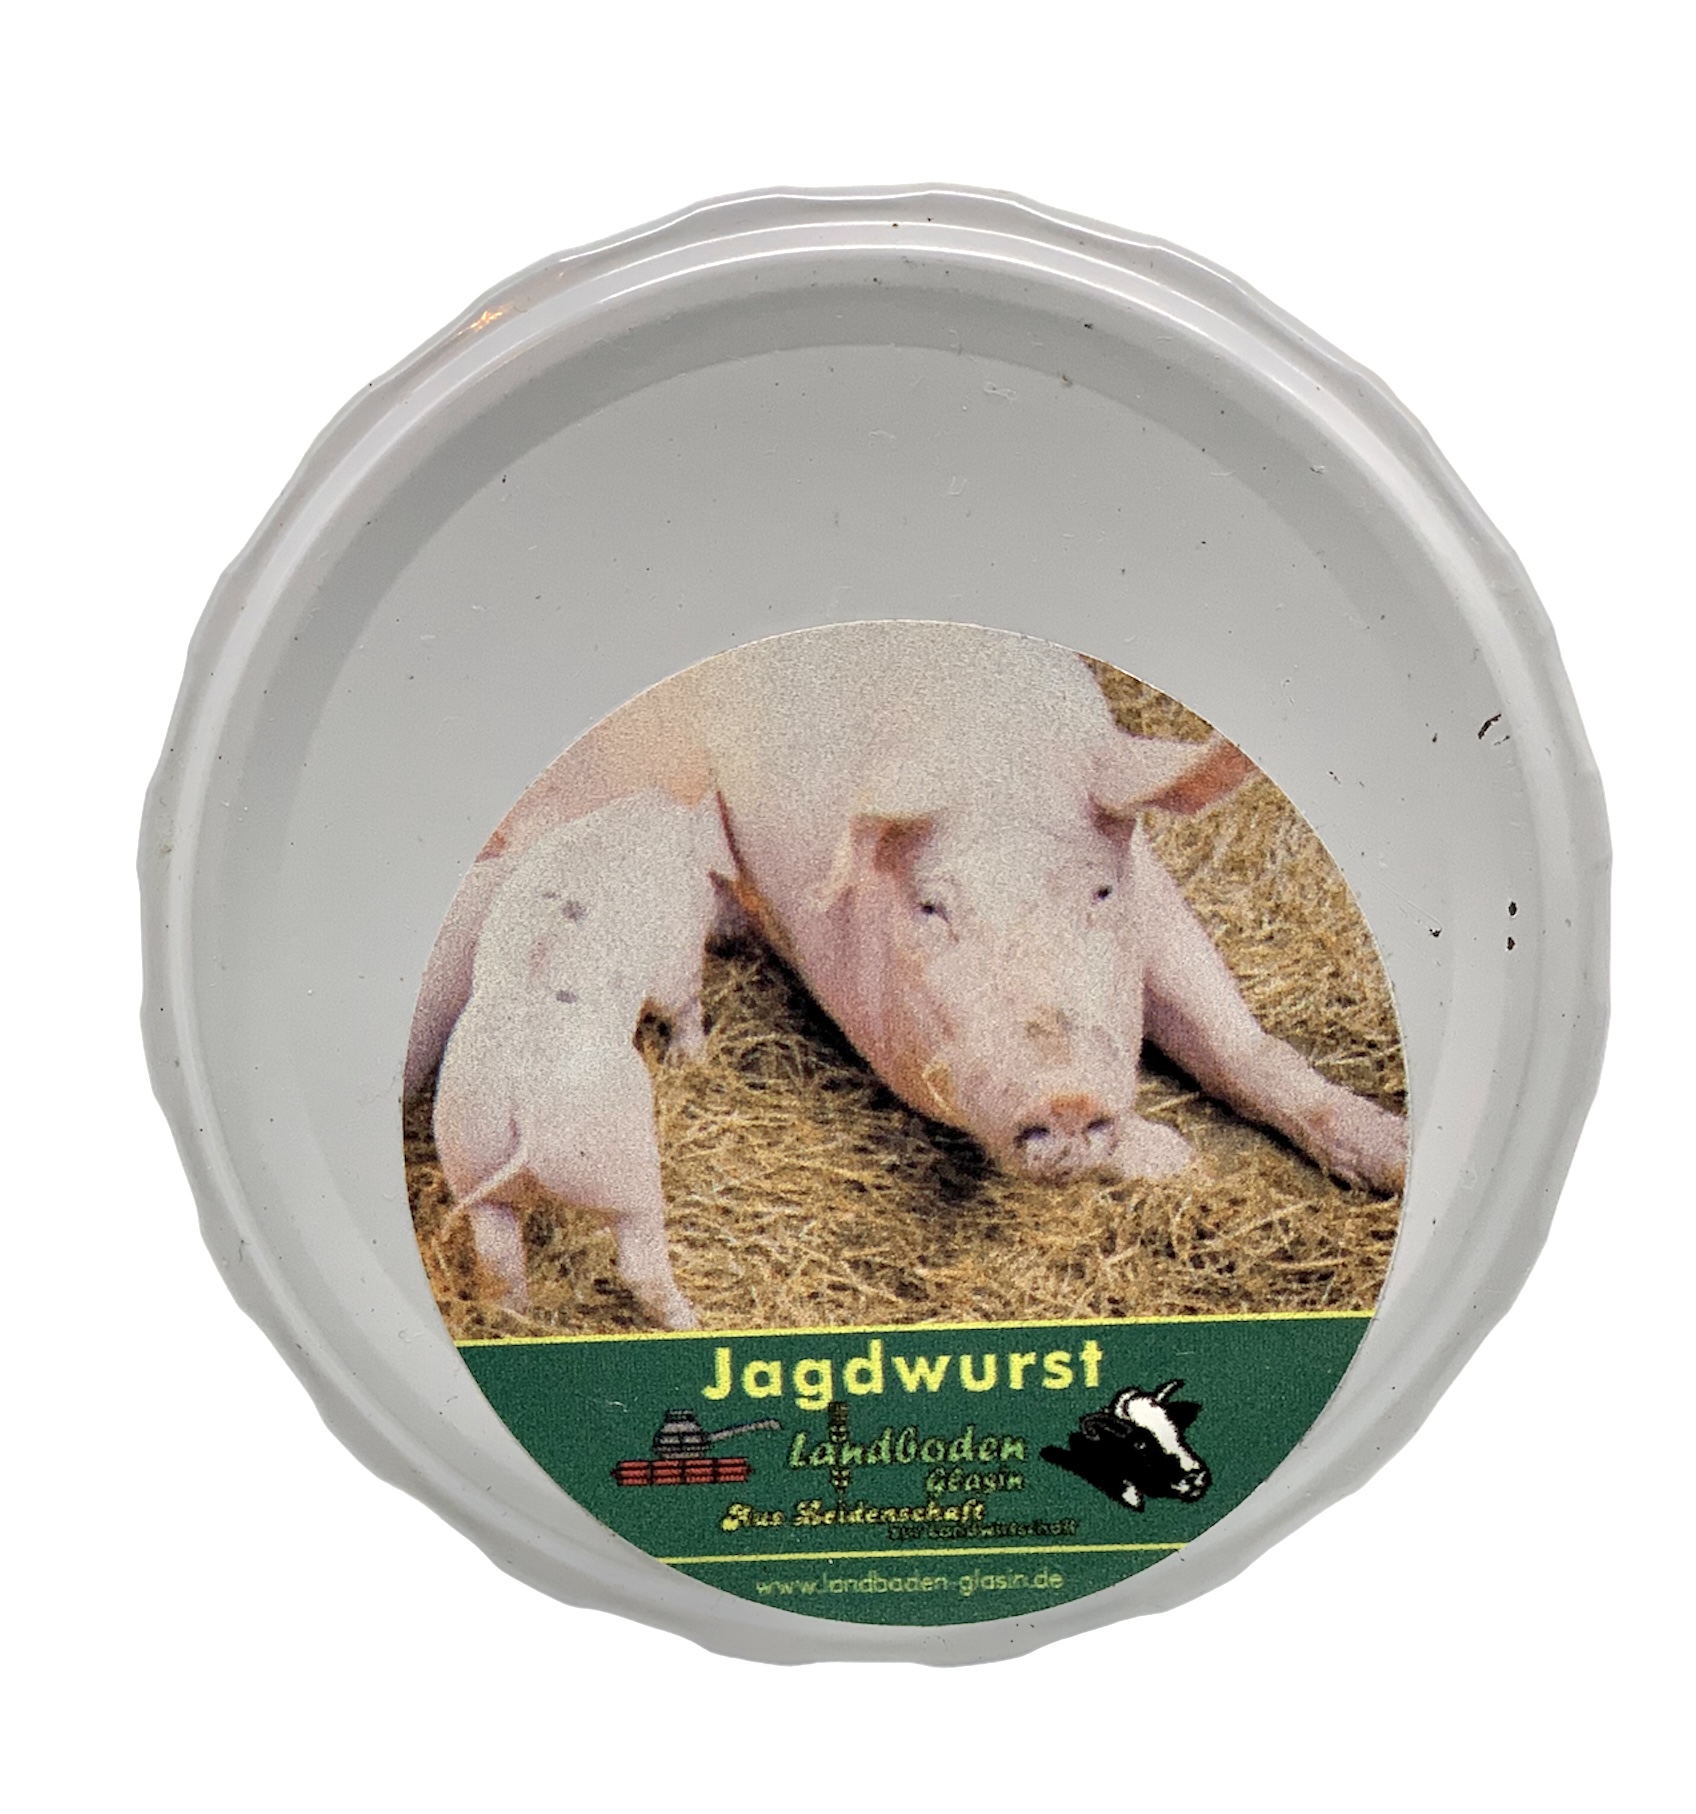 Schweine-Jagdwurst vom Landboden Glasin im 160 g Glas